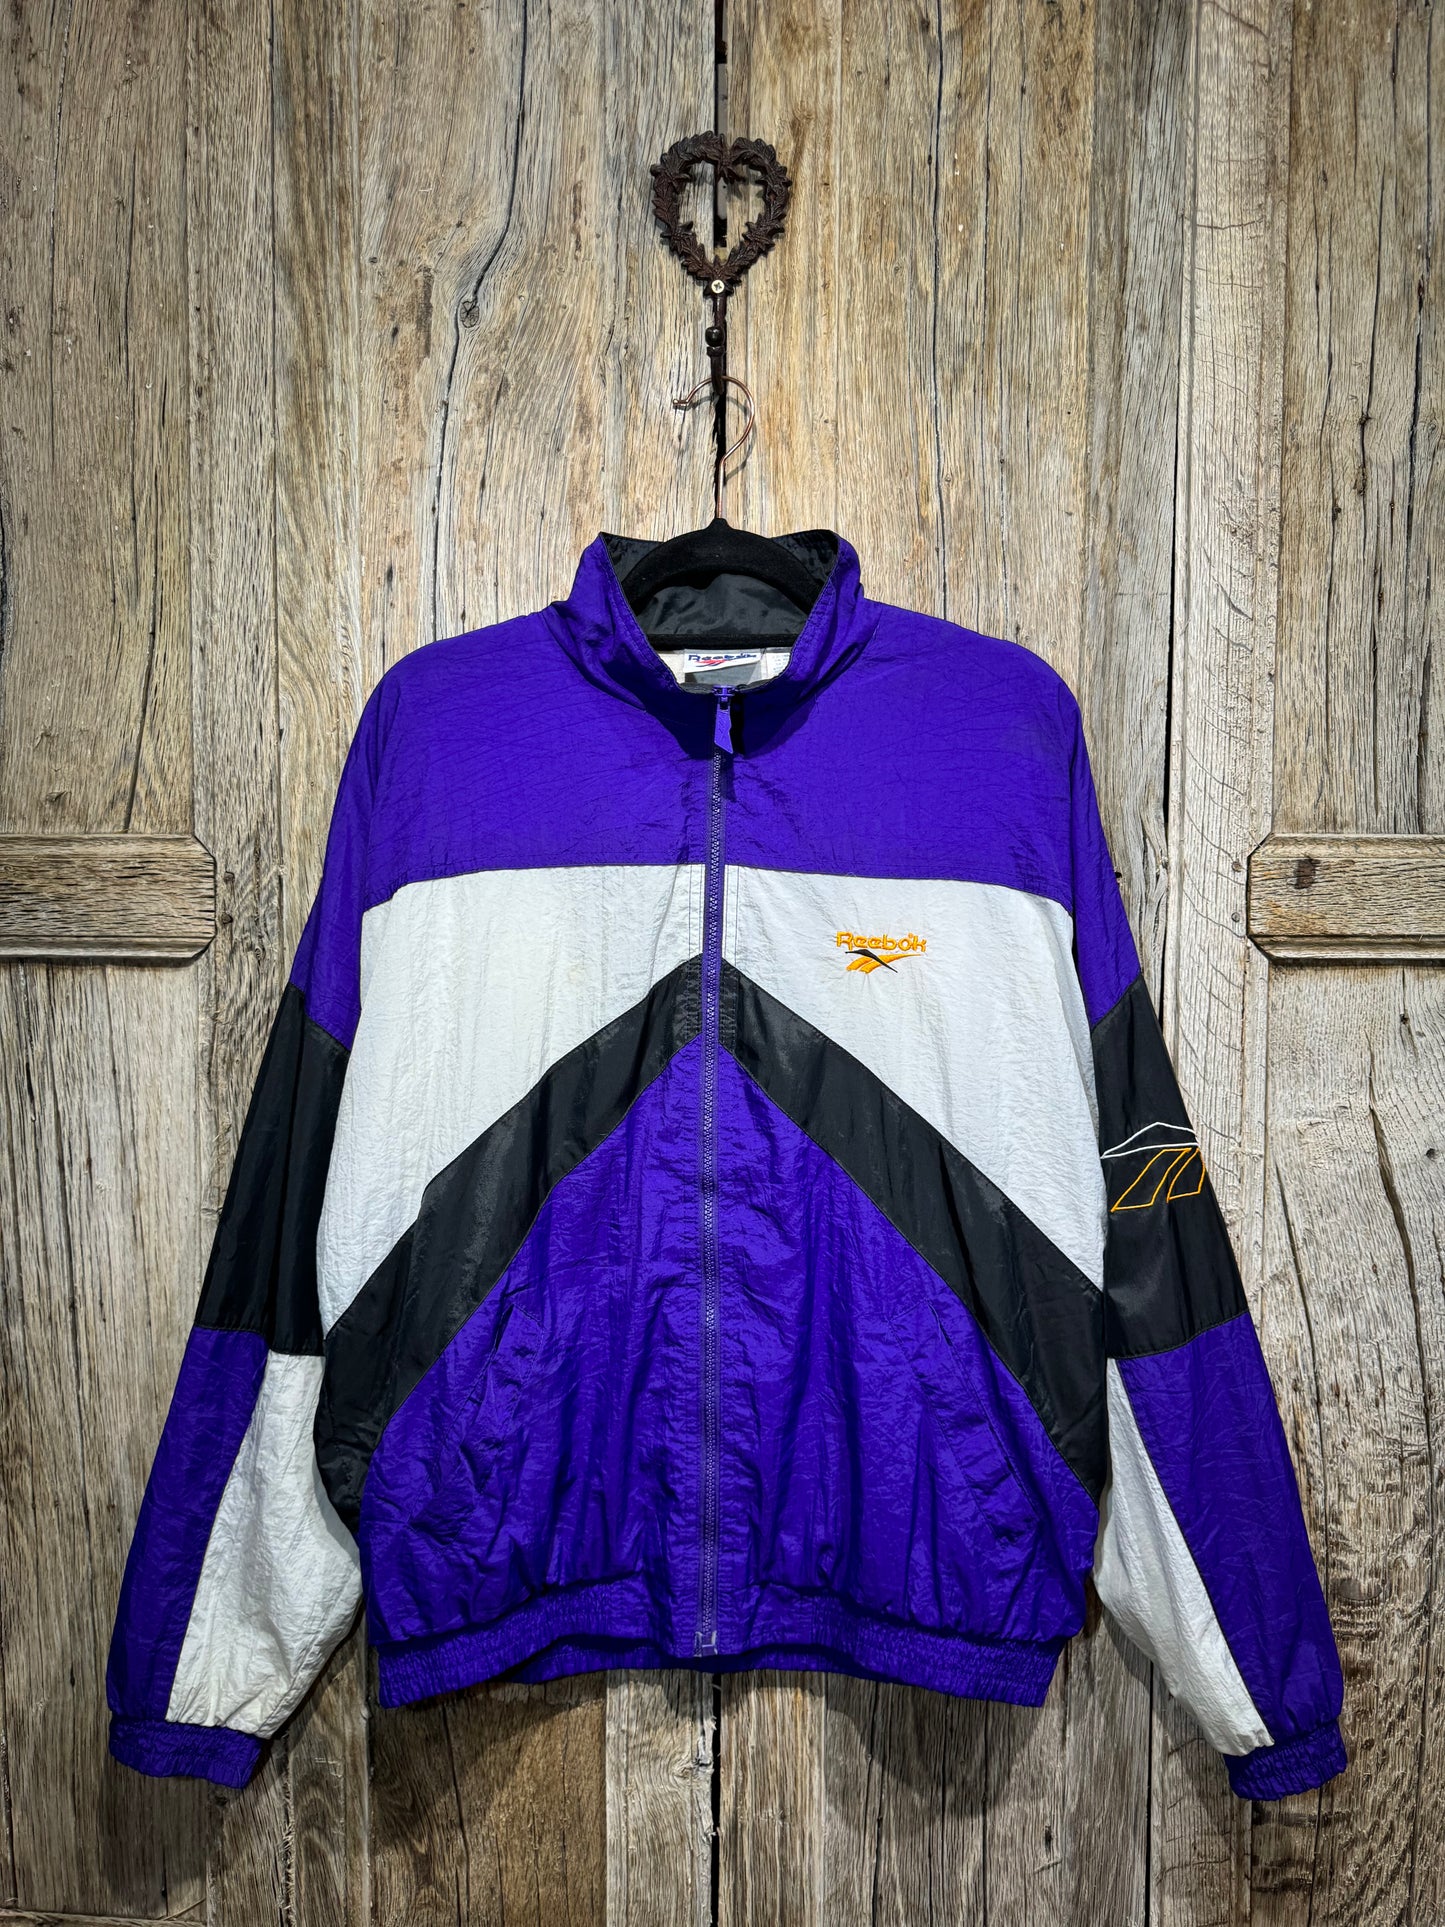 Vintage Purple Reebok Jacket